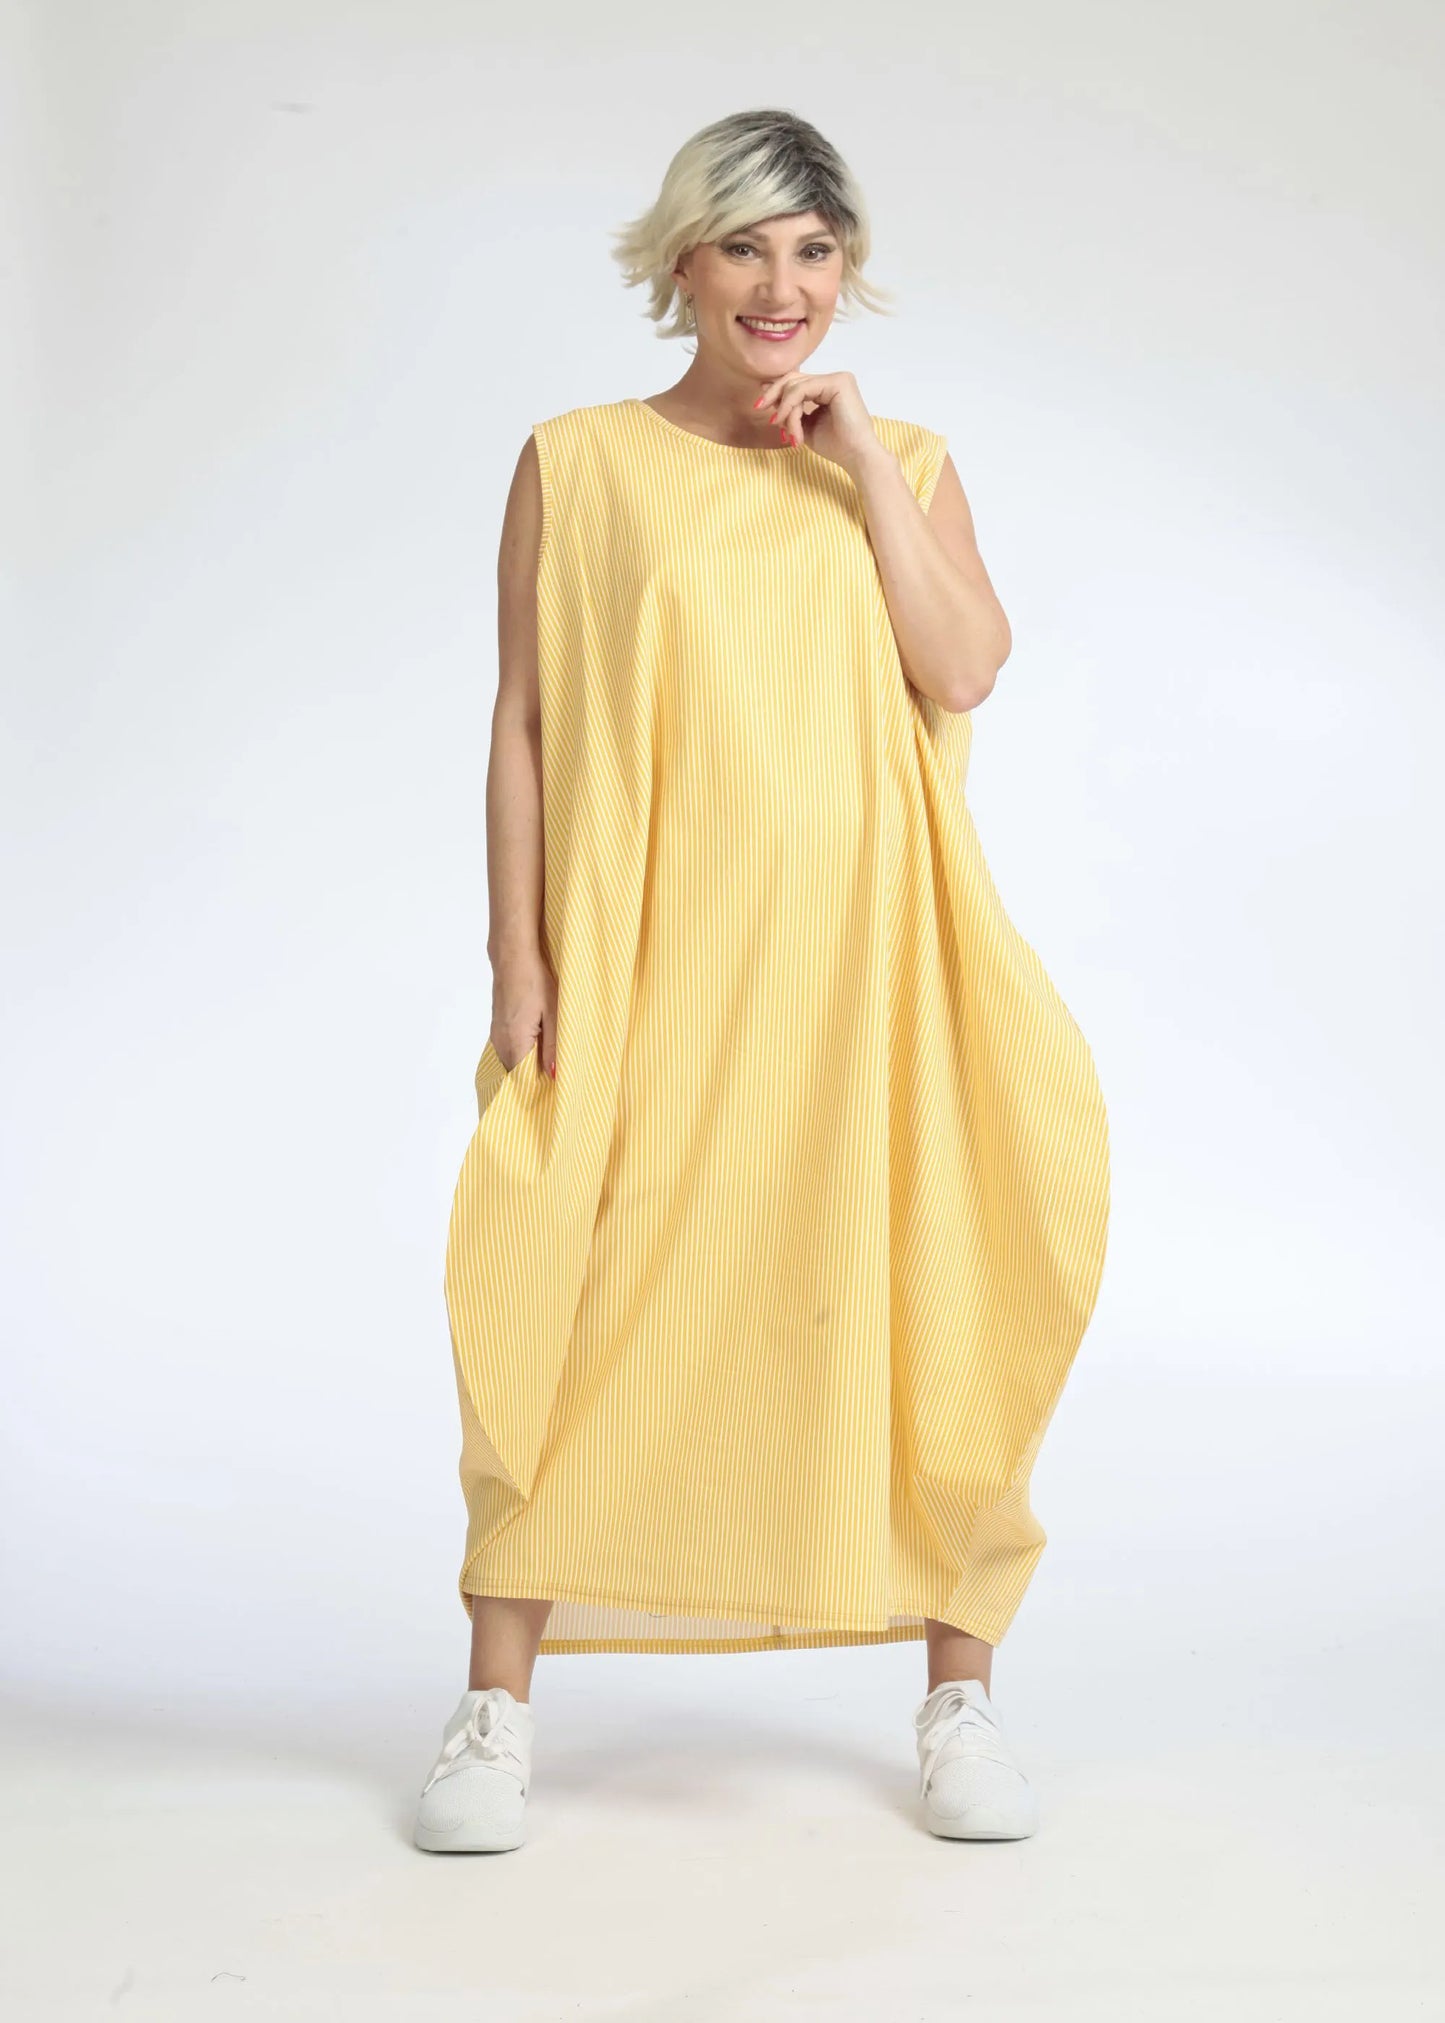 Sommer Kleid in Ballon Form aus glatter Popeline Qualität, Verena in Gelb-Weiß